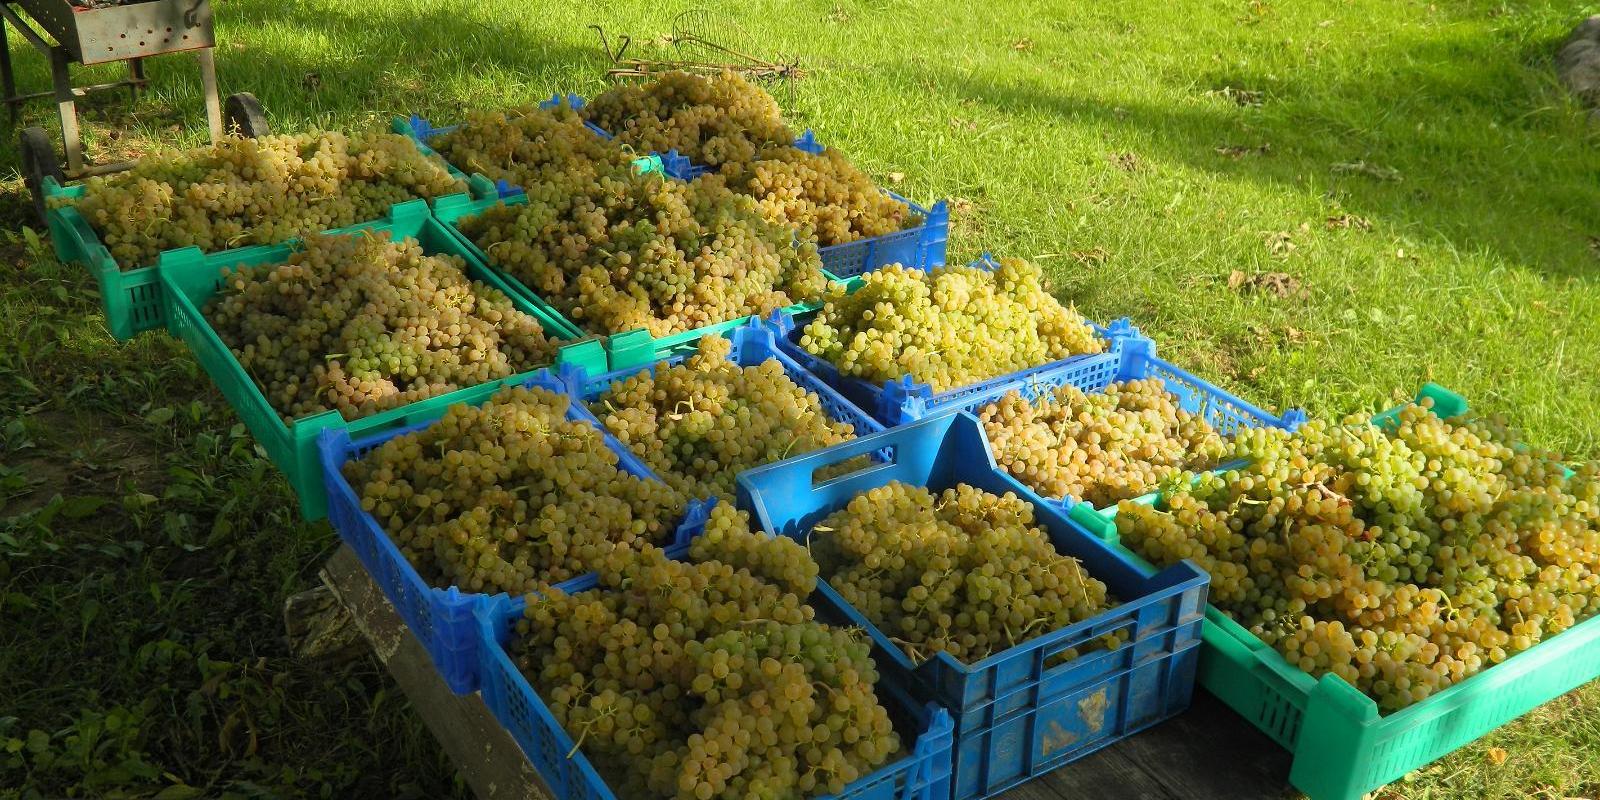 Vīna saimniecības "Järiste Veinitalu" zaļās vīnogas kastēs